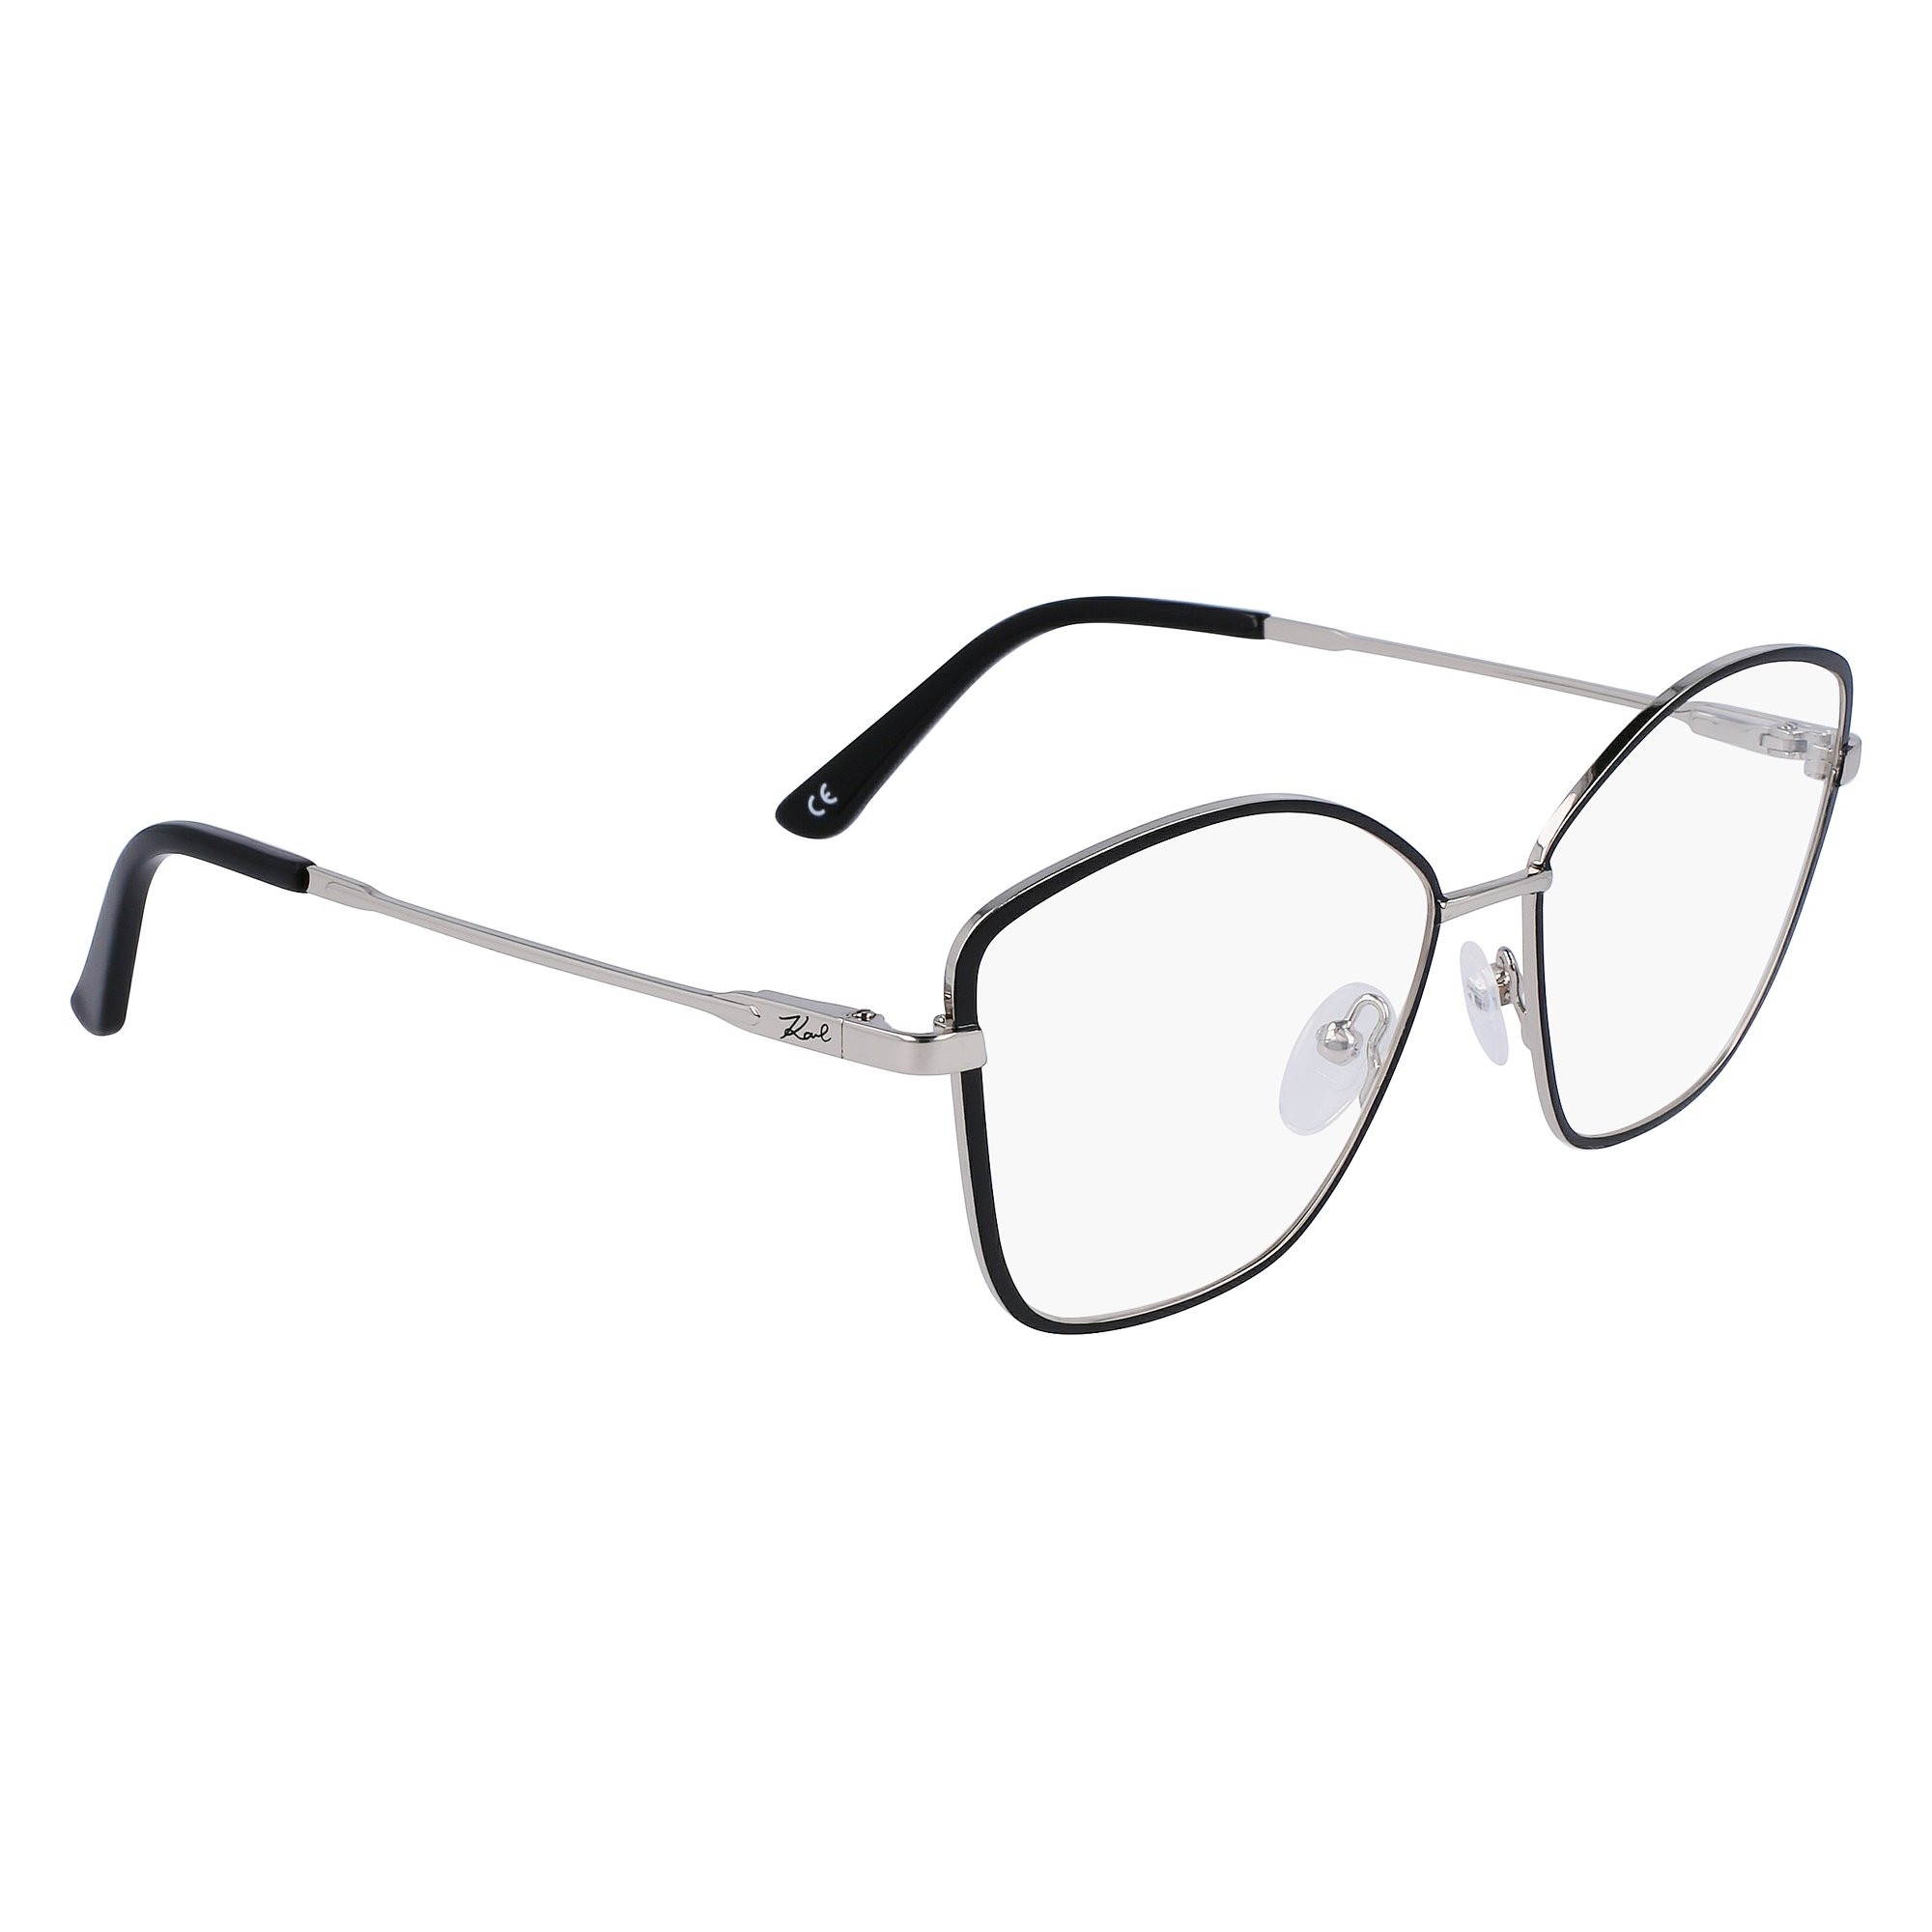 Karl Lagerfeld KL 345 - 001 Black | Eyeglasses Woman